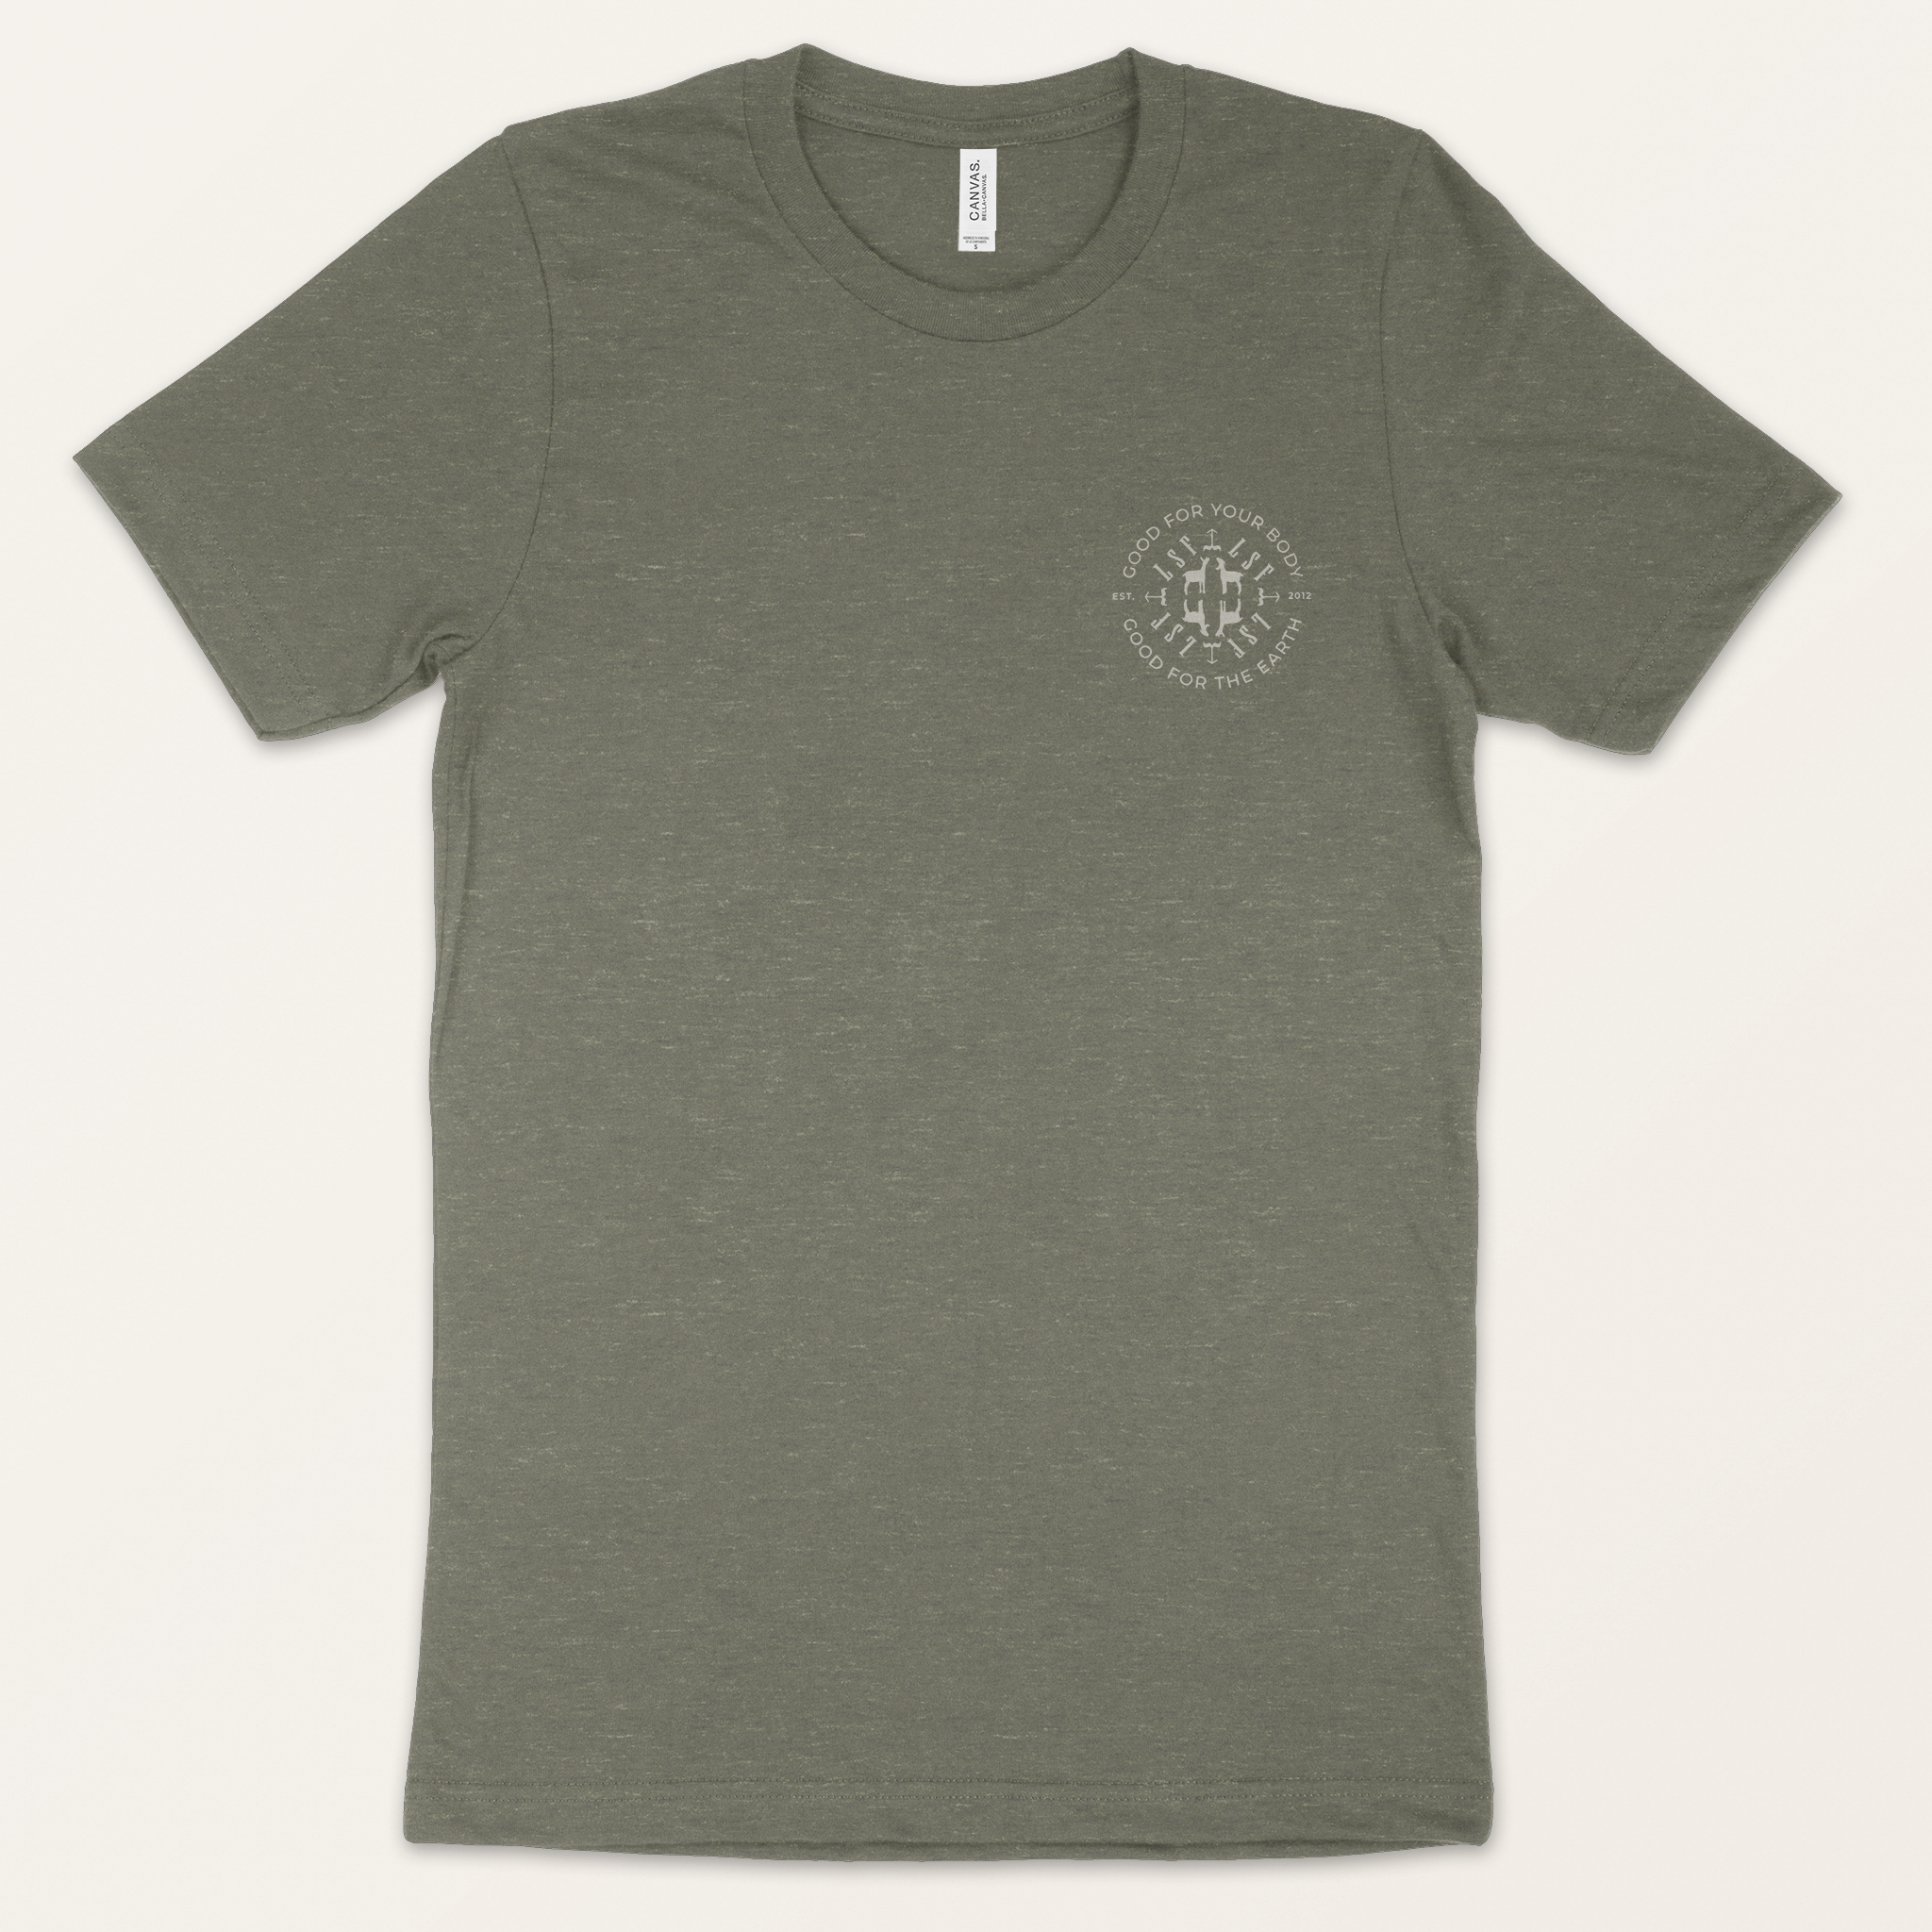 LSF T-Shirt